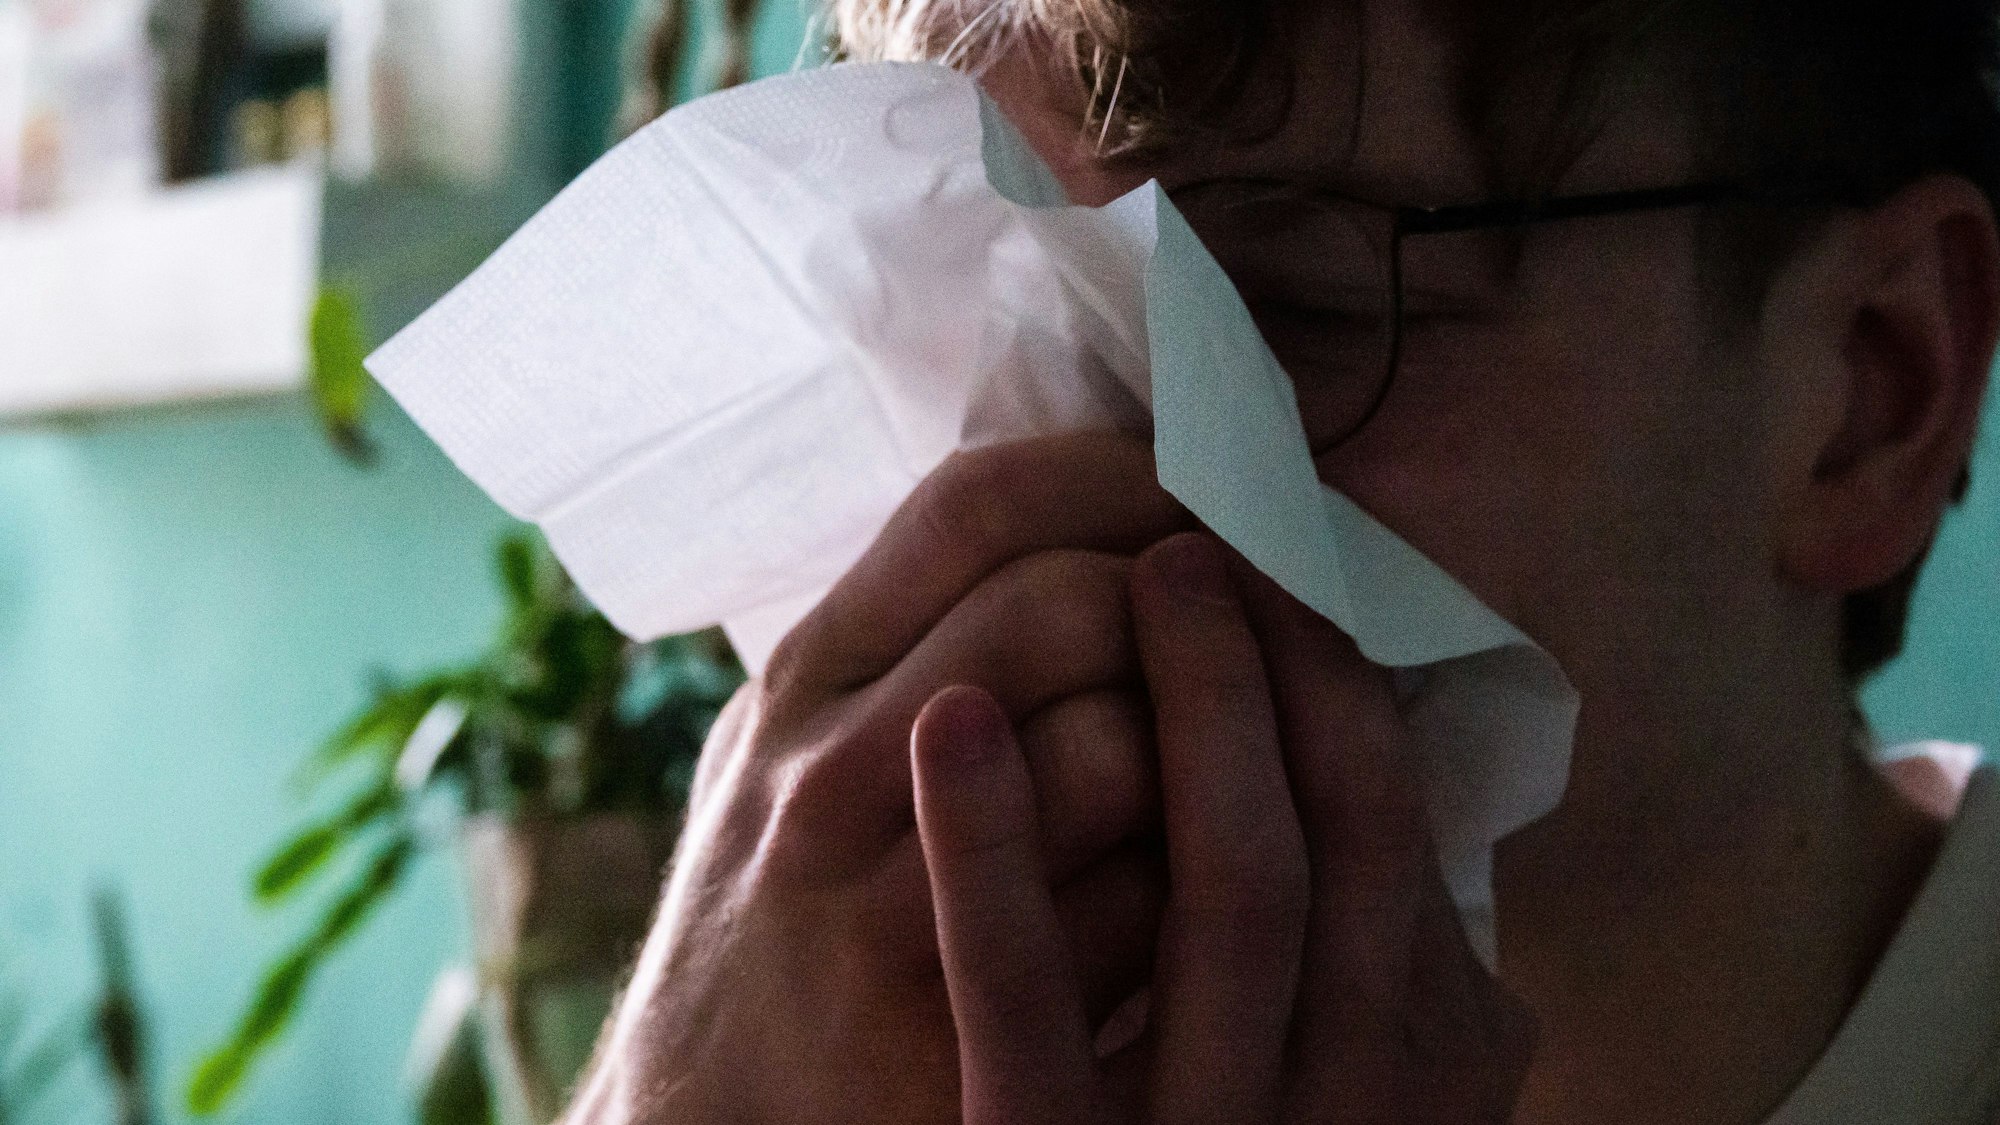 Ein Mann putzt sich mit einem Taschentuch die Nase.